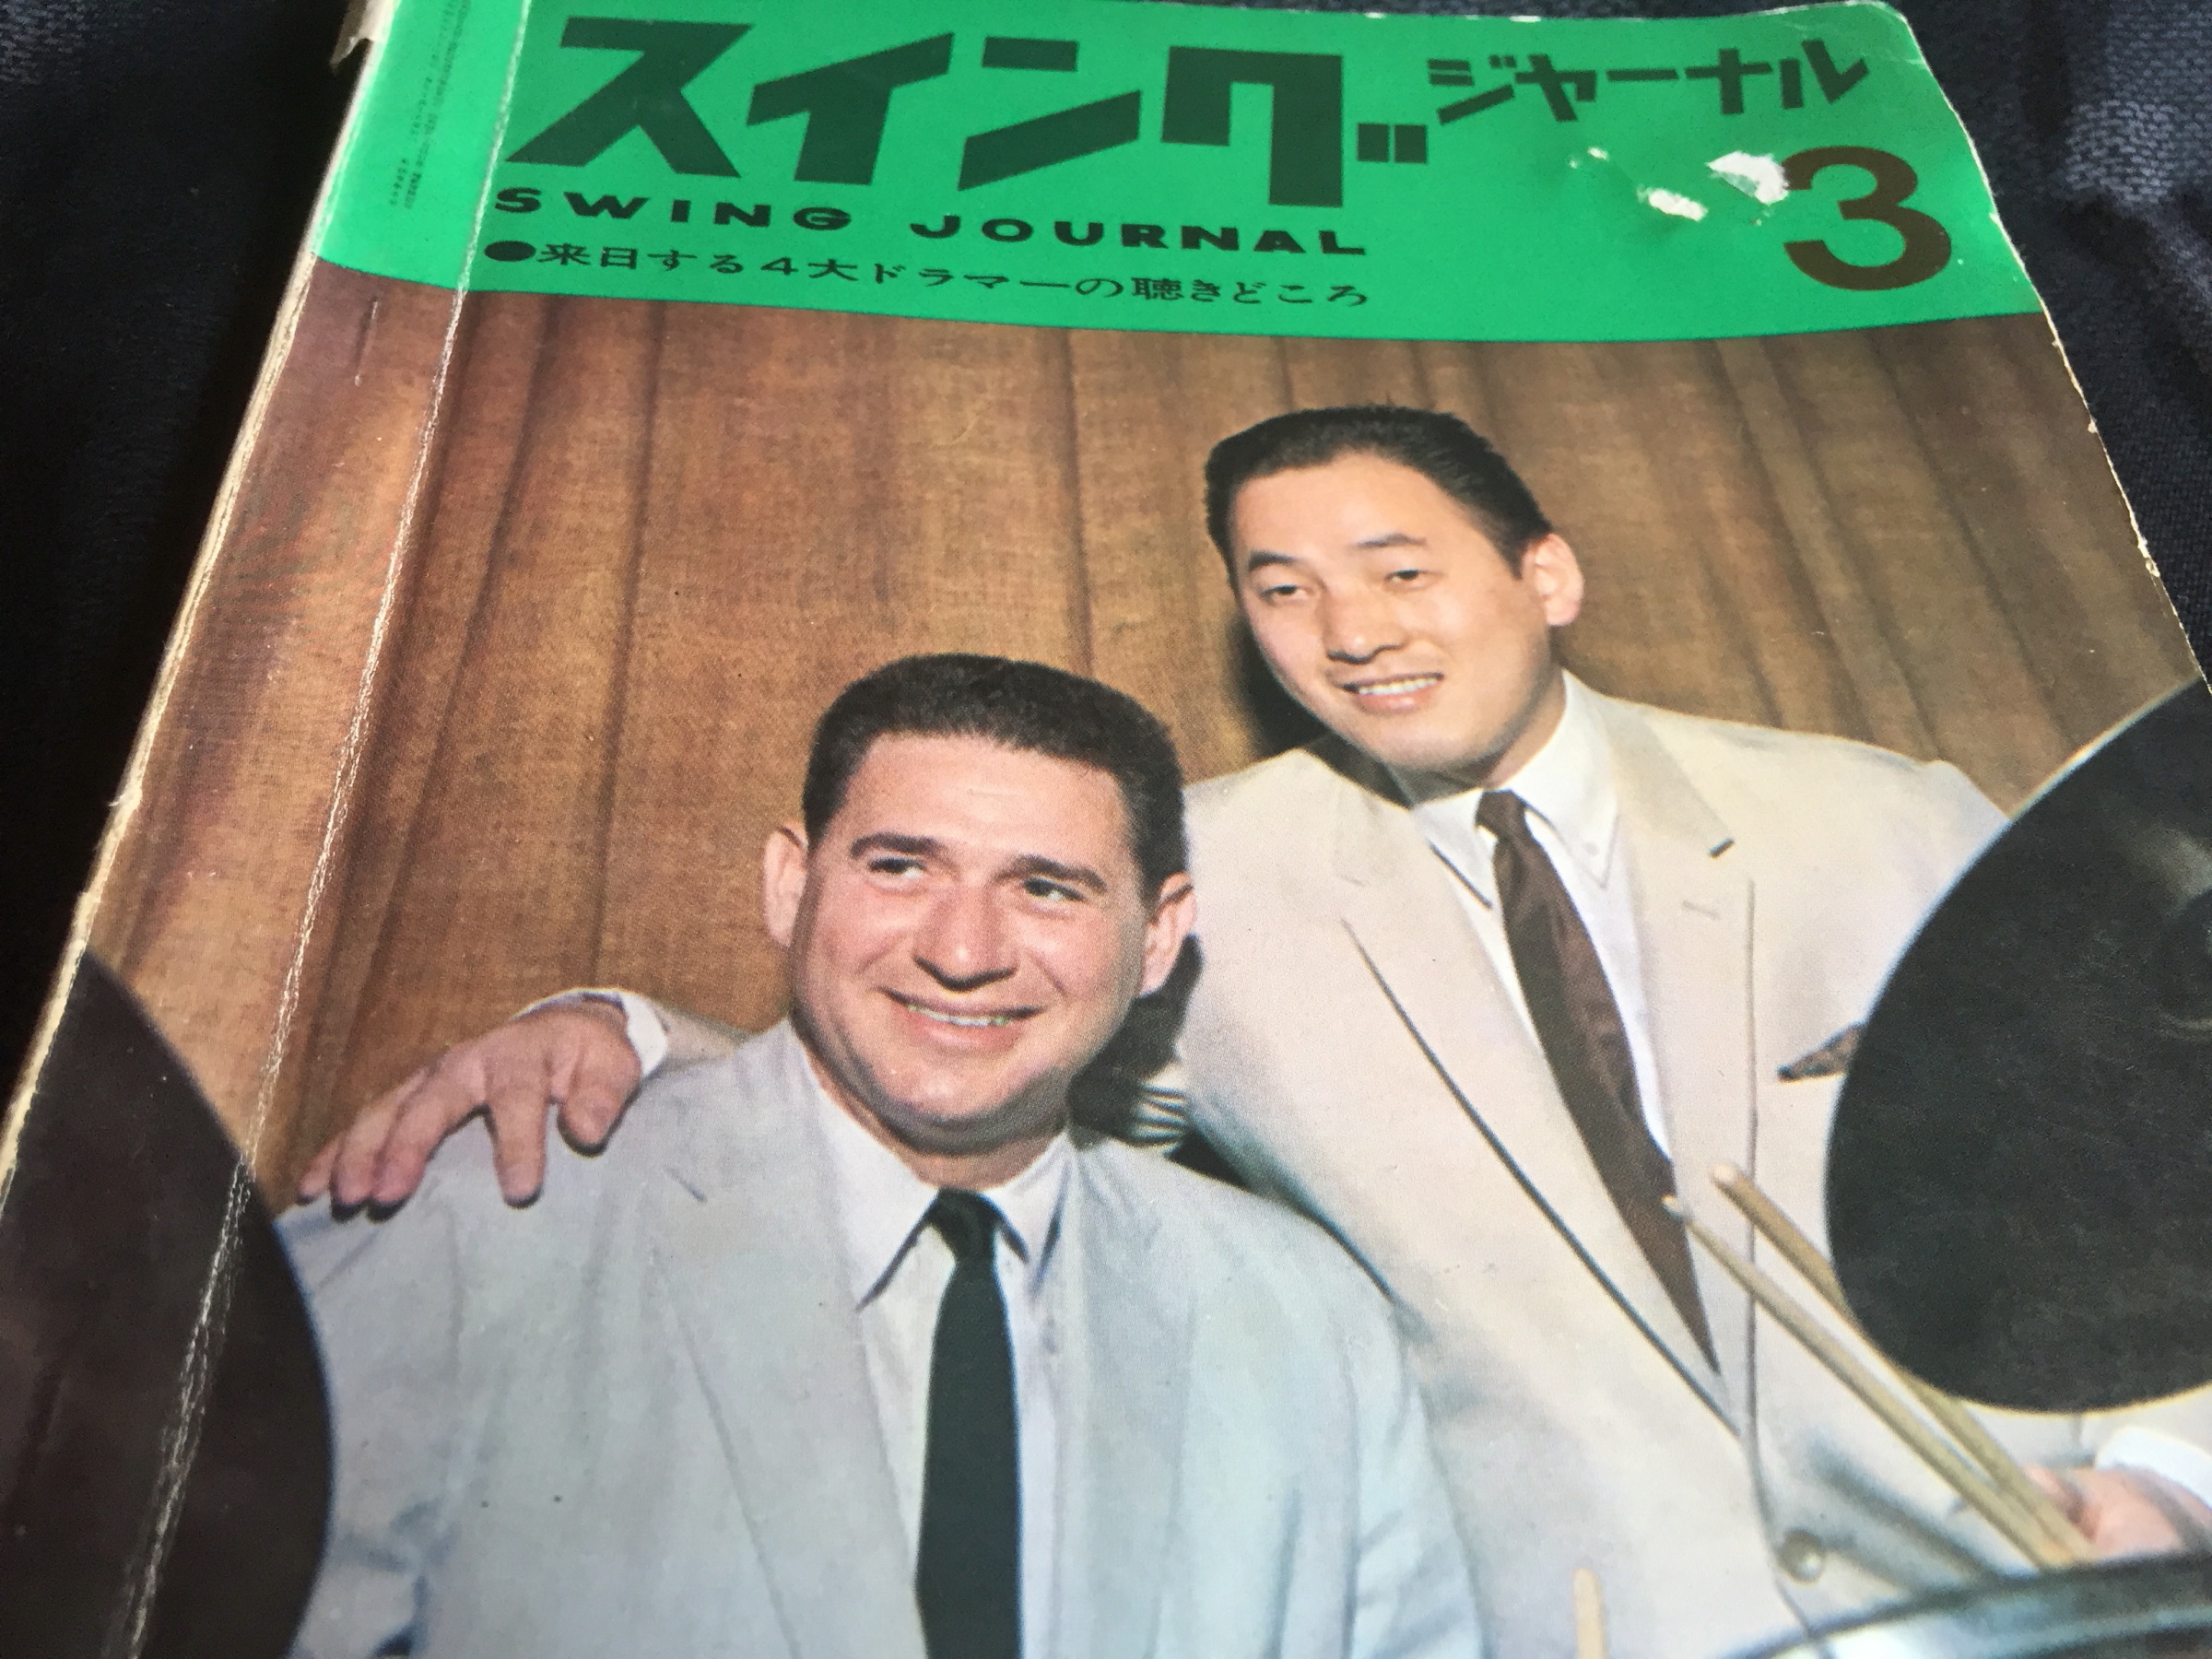 0円 【史上最も激安】 スイングジャーナル 1964年